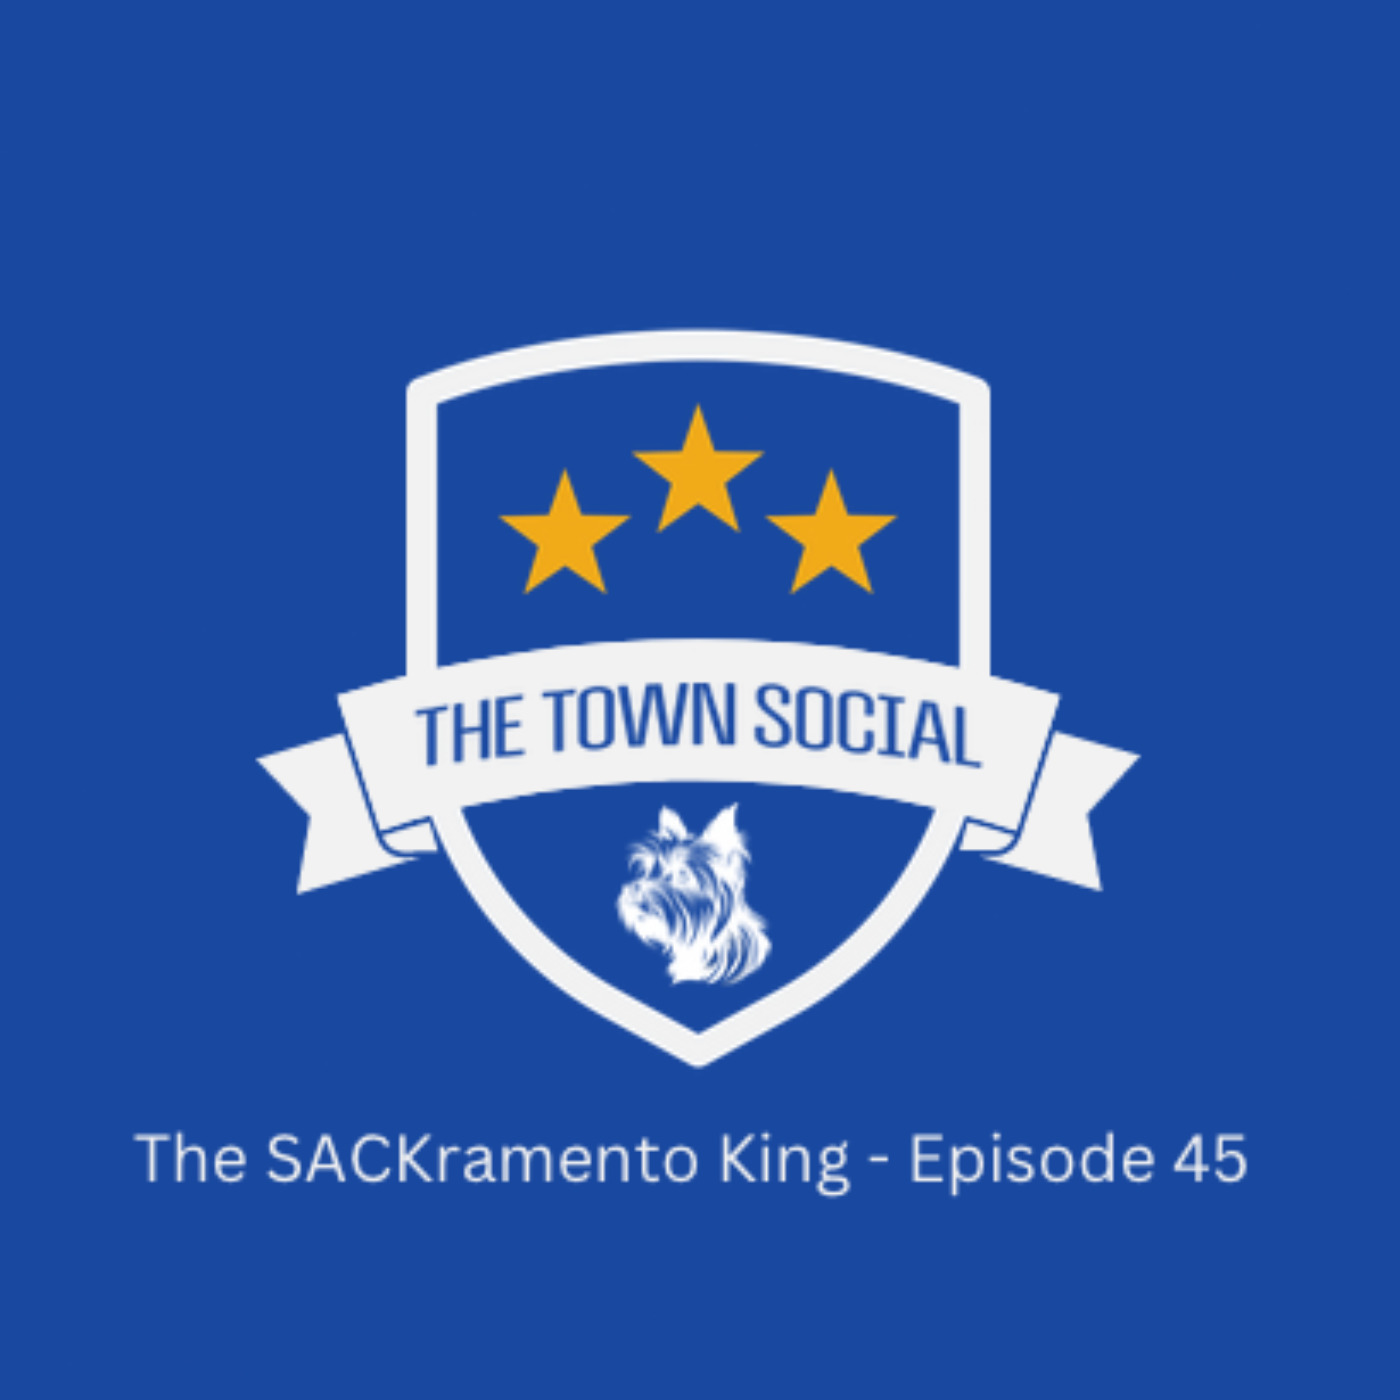 The Sackramento King - Episode 45